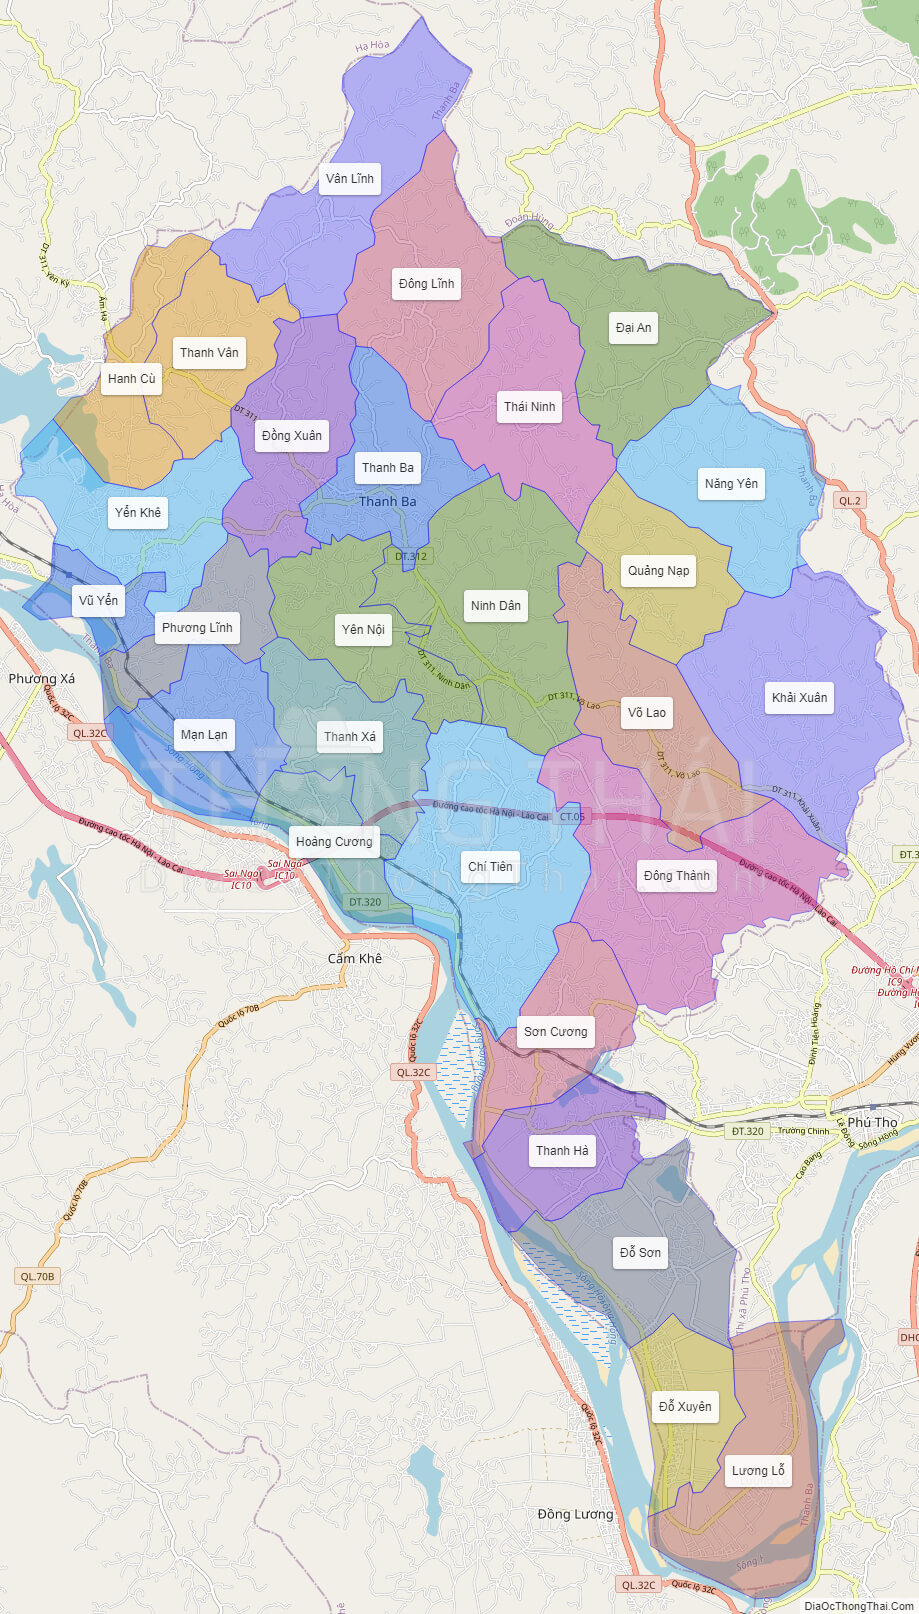 Cập nhật bản đồ huyện Thanh Ba mới nhất 2024, giúp bạn dễ dàng tìm kiếm thông tin về địa điểm, đường đi, các khu du lịch hấp dẫn trong địa phương. Xem ngay để khám phá những nét đẹp thiên nhiên độc đáo của Thanh Ba.